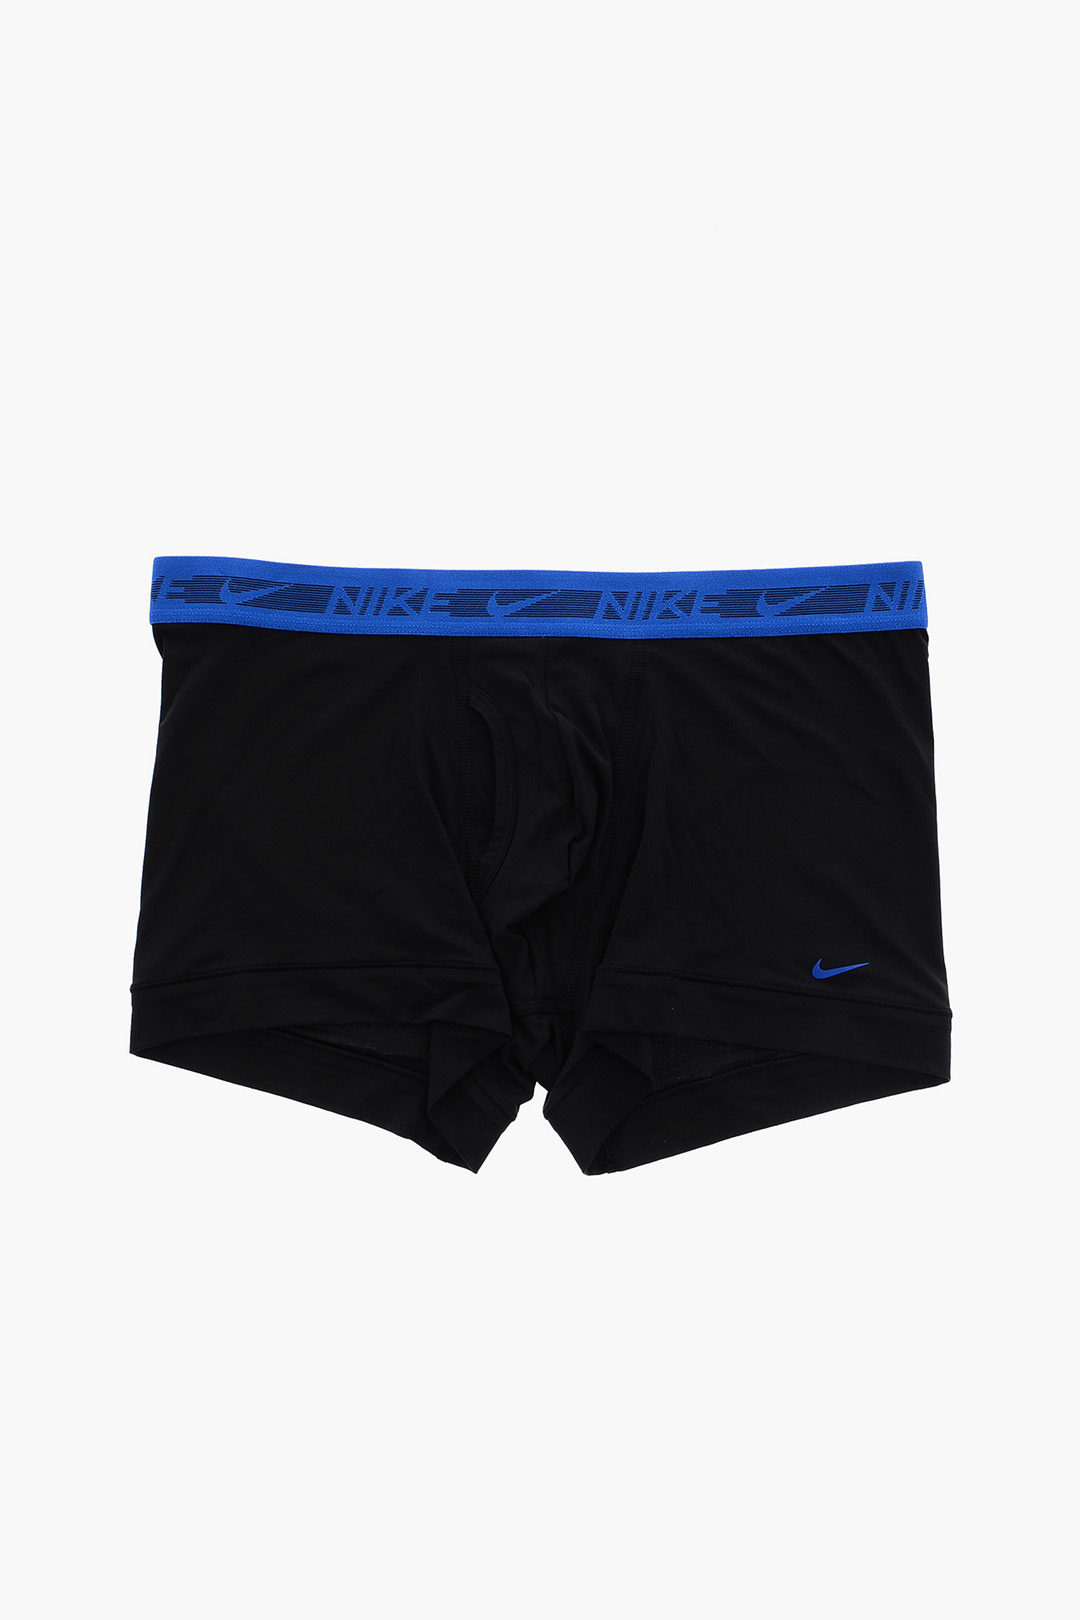 Nike Ultra Stretch Dri-Fit 3 Boxer Set men - Glamood Outlet